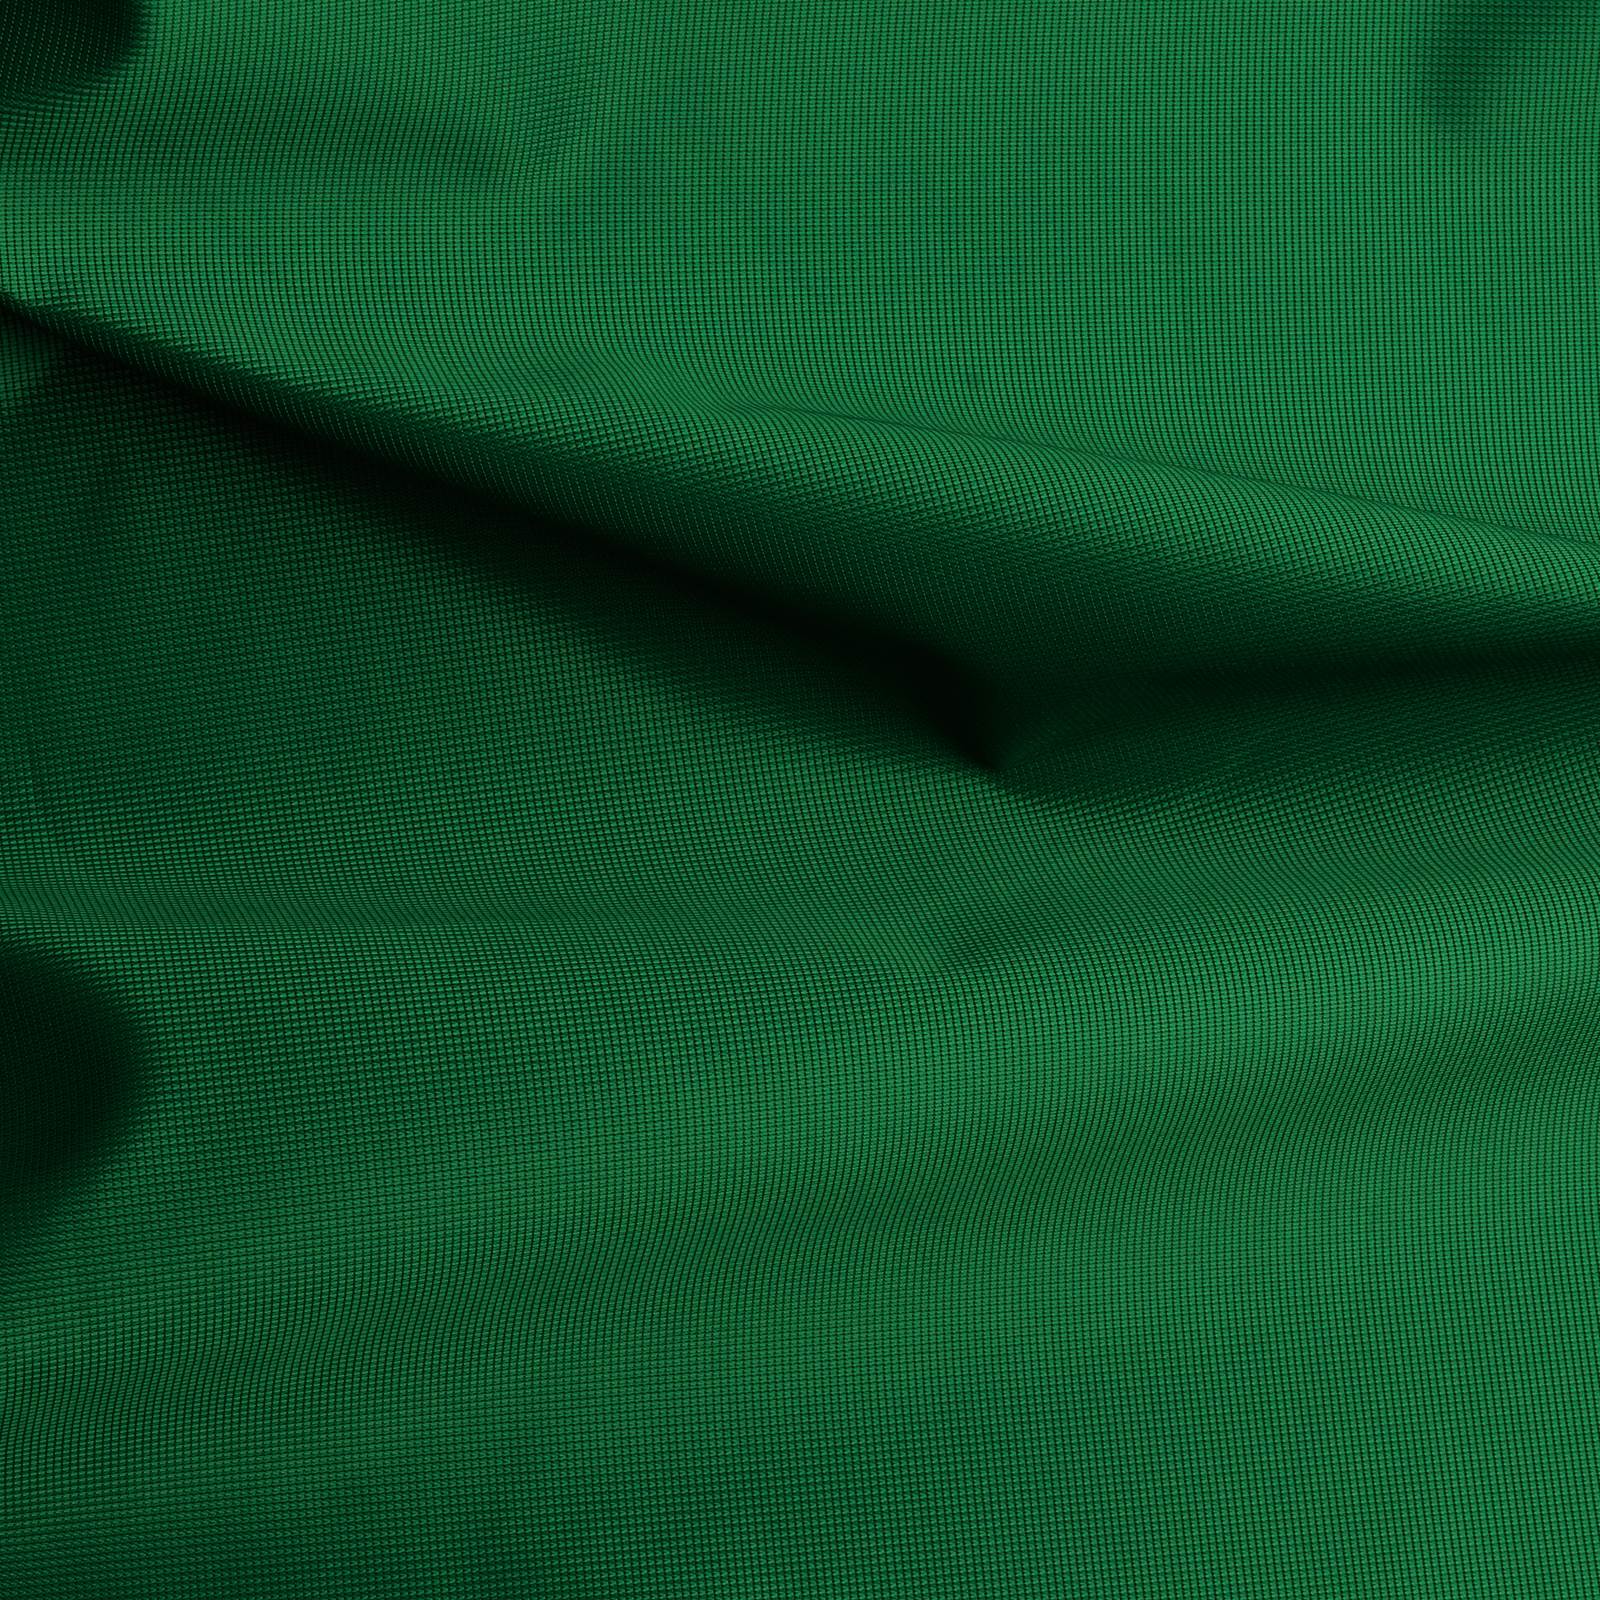 Ava Flag Fabric - Bandiera in poliestere lavorato a maglia – Verde